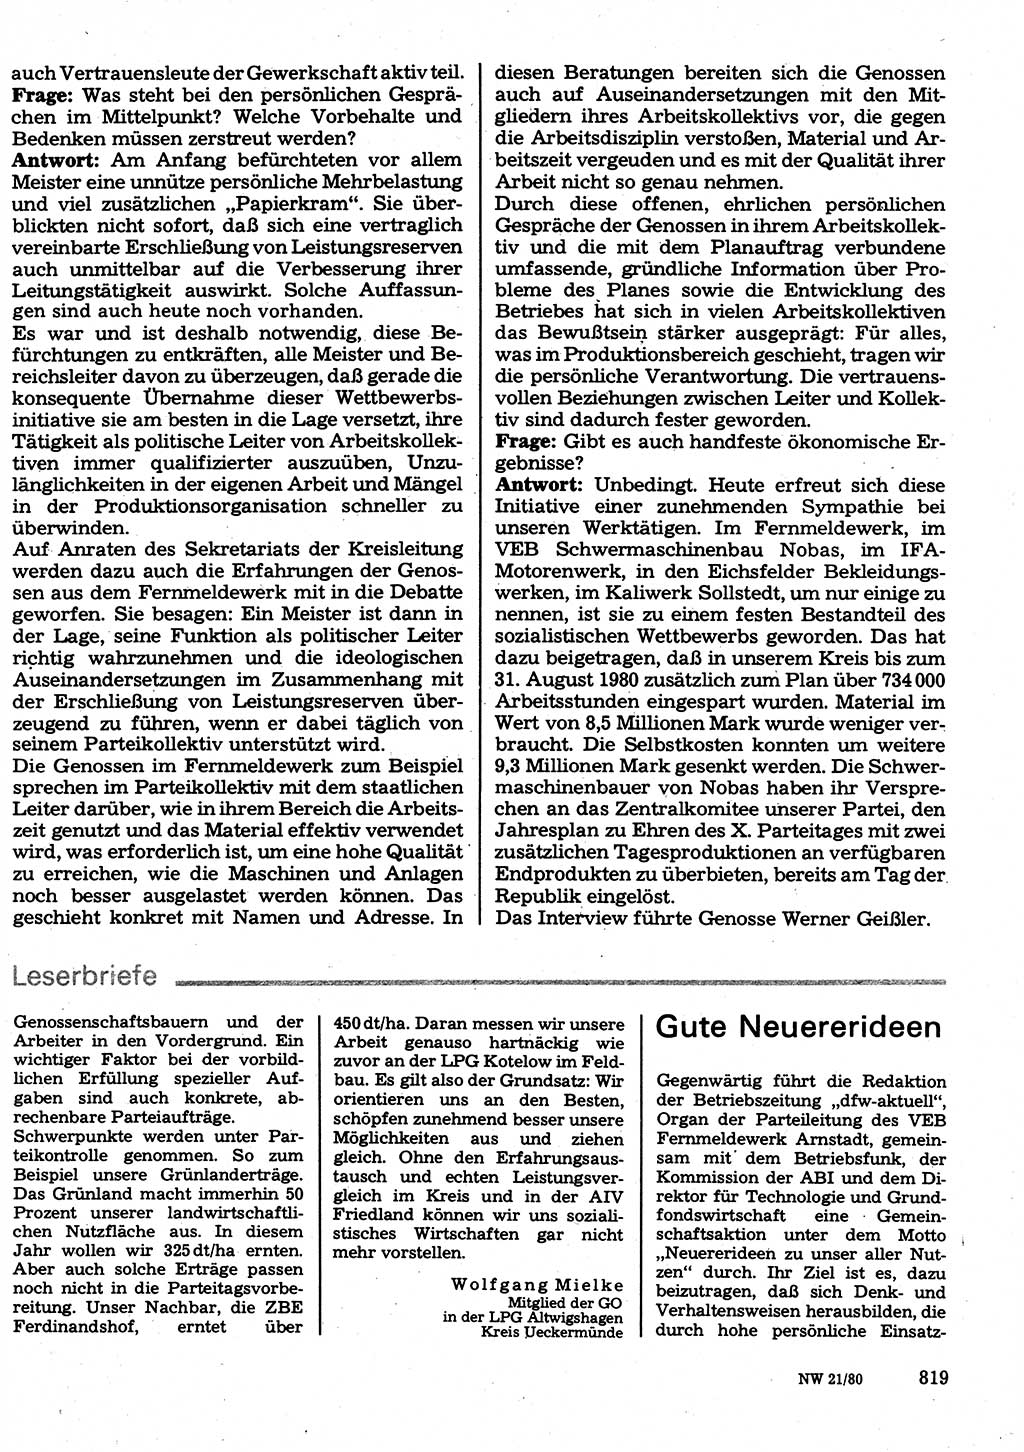 Neuer Weg (NW), Organ des Zentralkomitees (ZK) der SED (Sozialistische Einheitspartei Deutschlands) für Fragen des Parteilebens, 35. Jahrgang [Deutsche Demokratische Republik (DDR)] 1980, Seite 819 (NW ZK SED DDR 1980, S. 819)